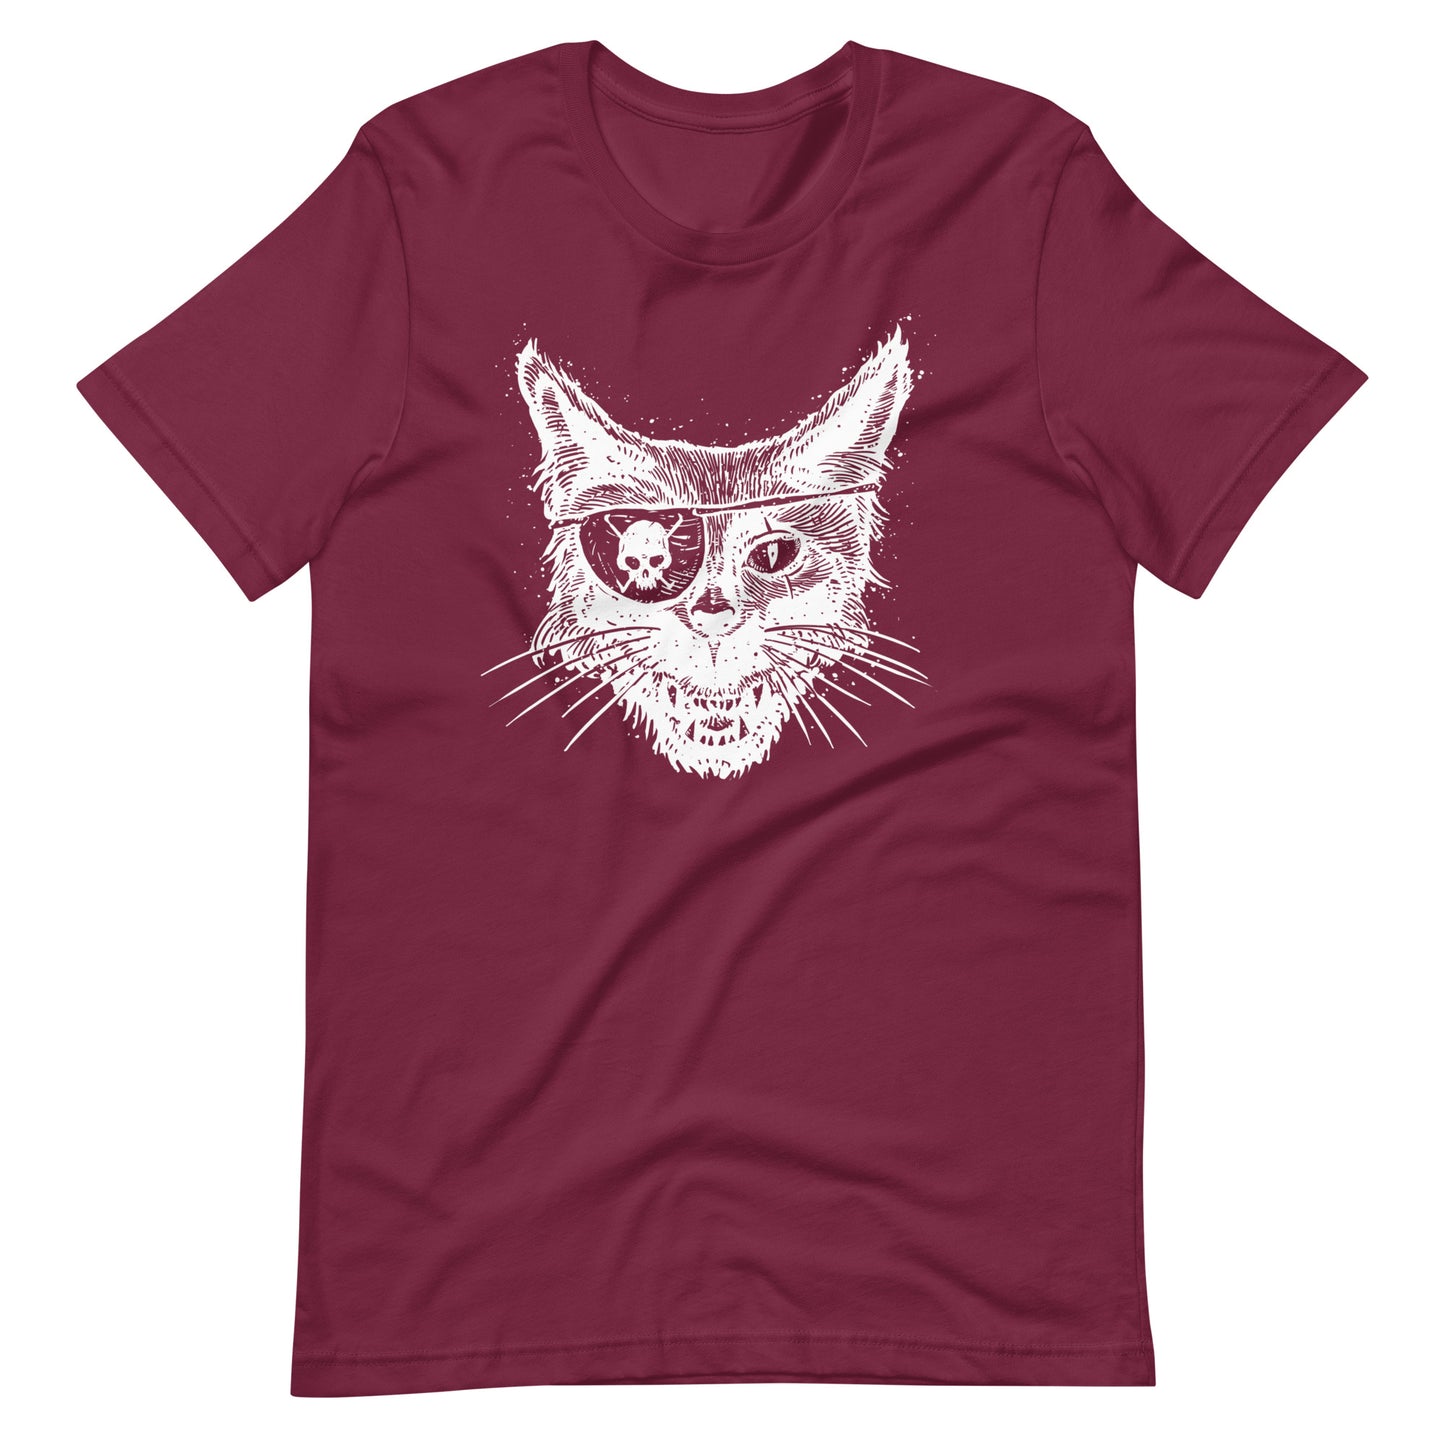 Cat Skull Eye White - Unisex t-shirt - Maroon Front